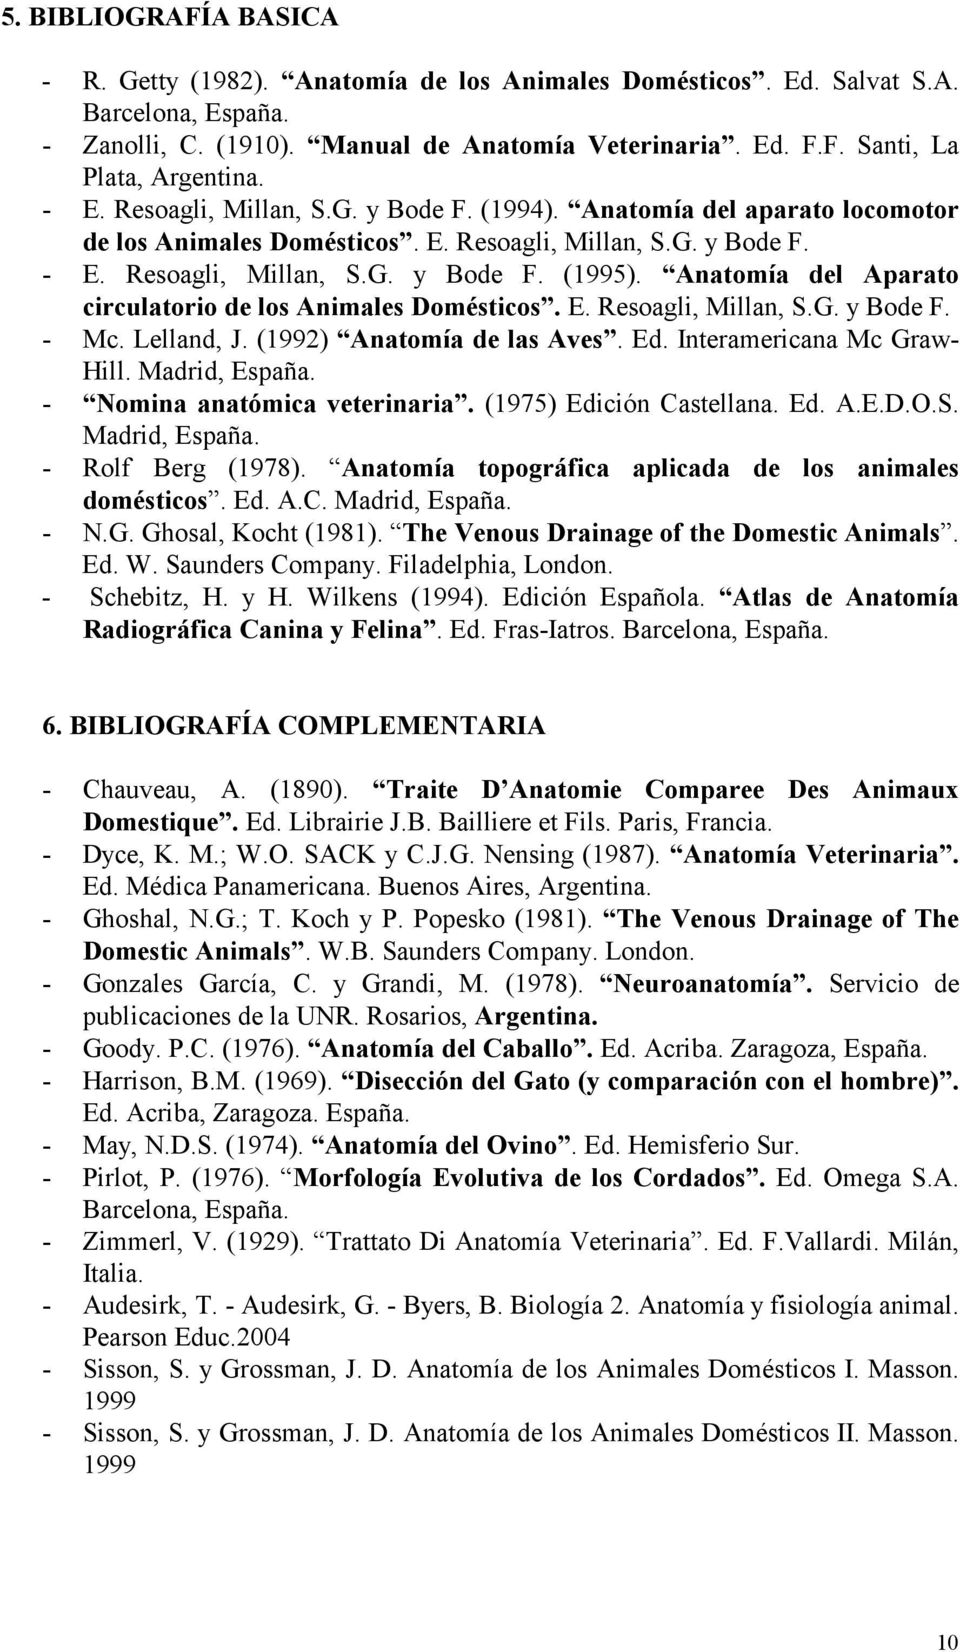 Anatomía del Aparato circulatorio de los Animales Domésticos. E. Resoagli, Millan, S.G. y Bode F. - Mc. Lelland, J. (1992) Anatomía de las Aves. Ed. Interamericana Mc Graw- Hill. Madrid, España.